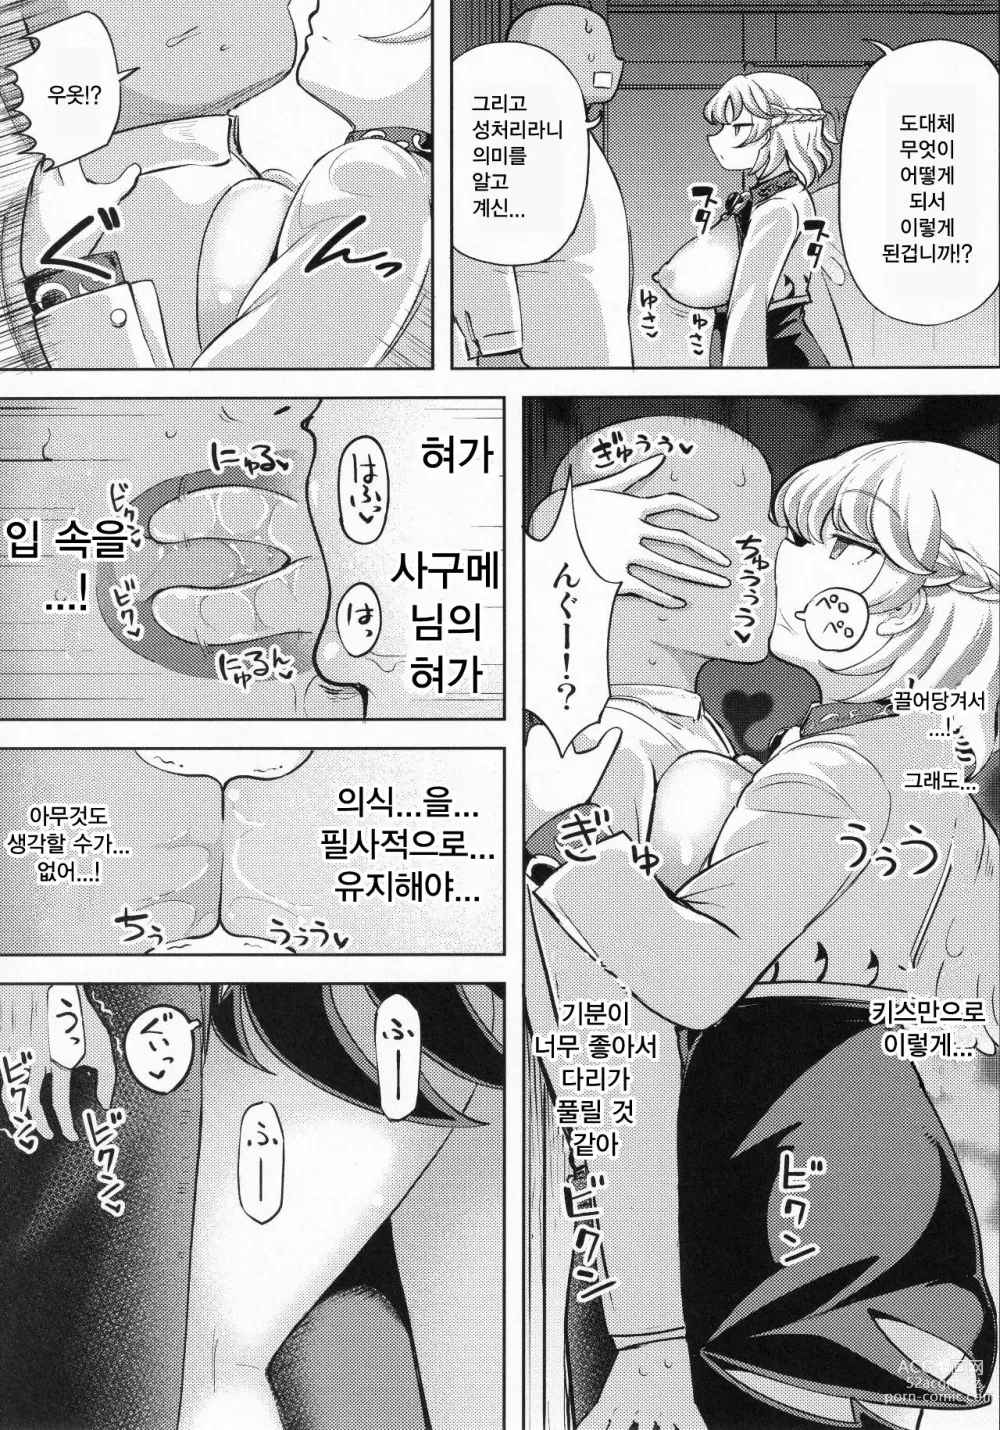 Page 4 of doujinshi 육첩 단칸방의 감금조교 키신 사구메